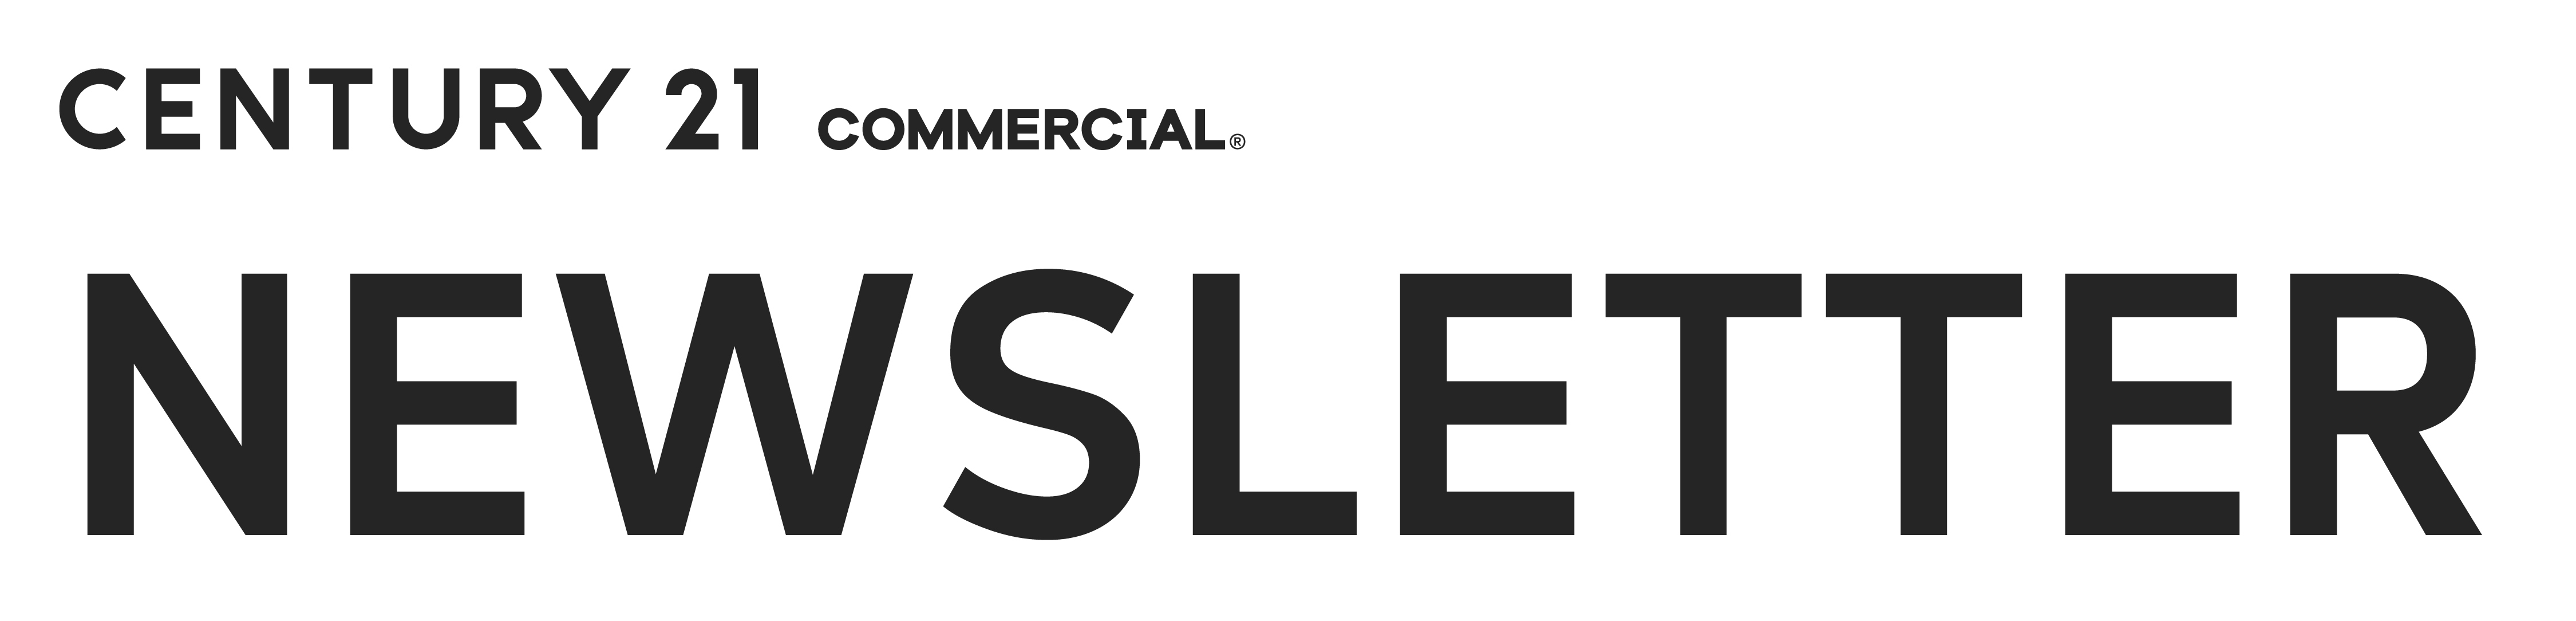 Logo for CENTURY 21 Commercial Real Estate Newsletter